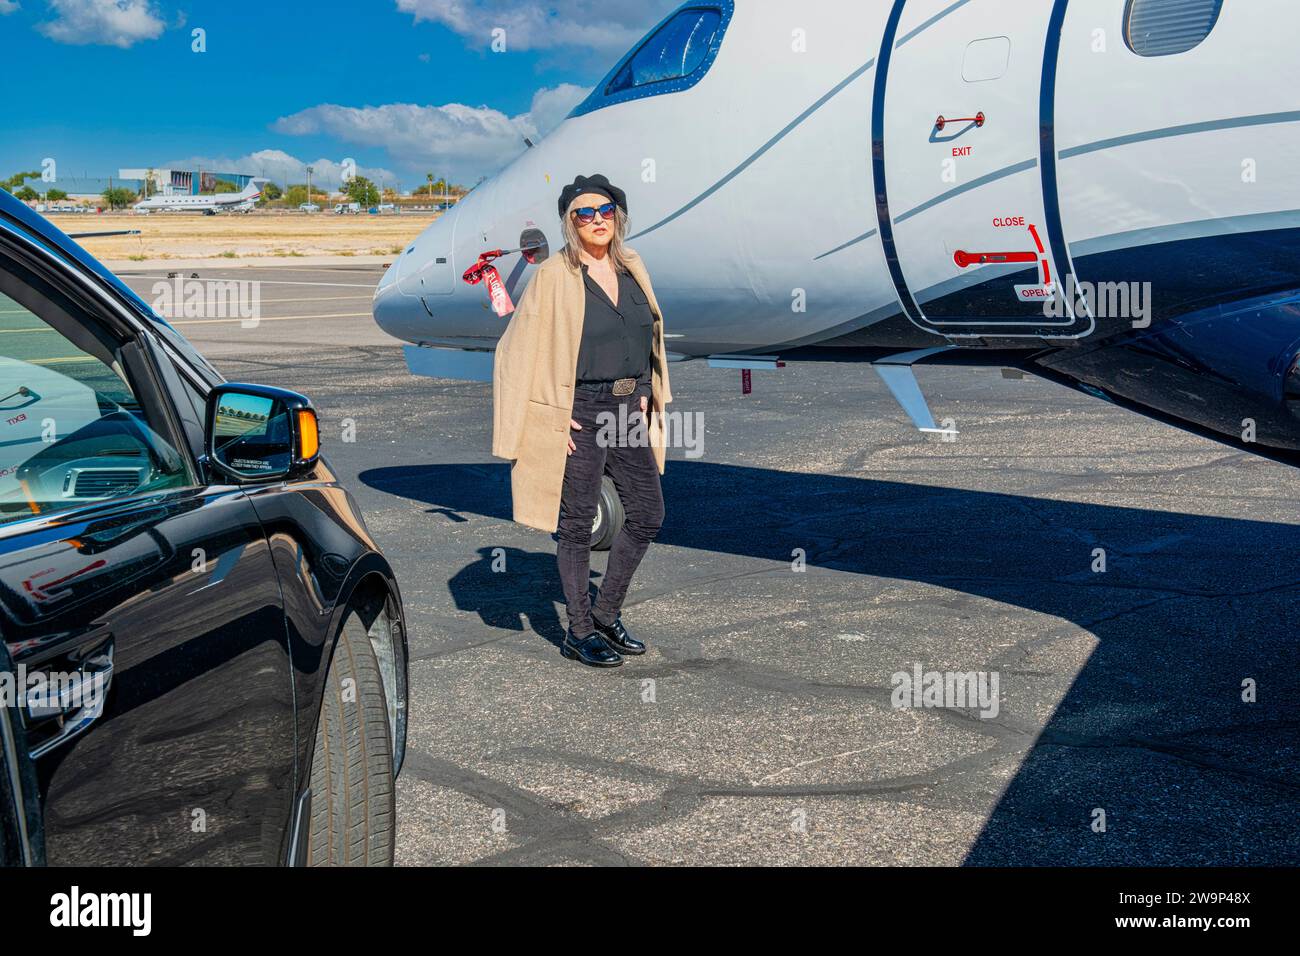 Erstes Weltproblem - VIP-Person wartet vor einem verschlossenen Privatjet, da der Pilot zu spät kommt. Stockfoto